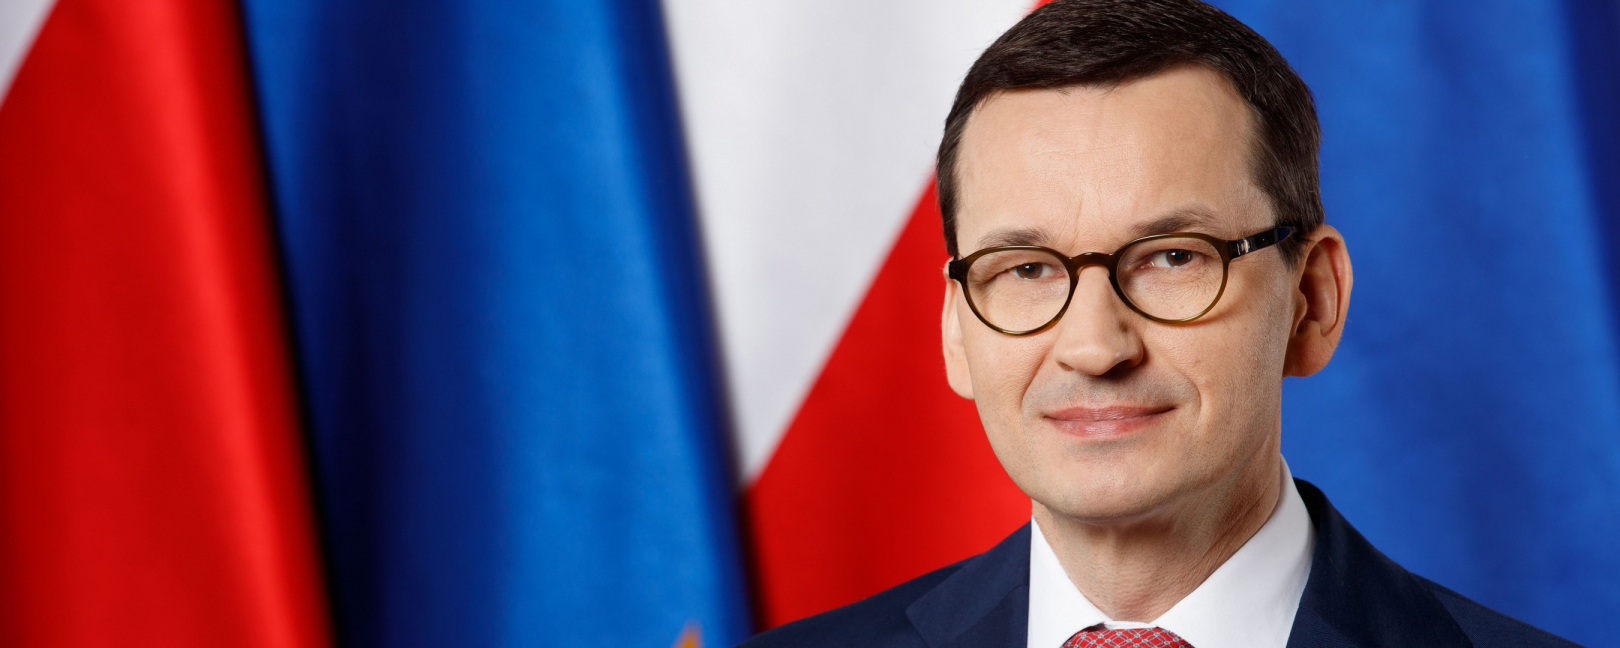 Моравецкий: События в России убедил Польшу в правильности строительства забора на границе